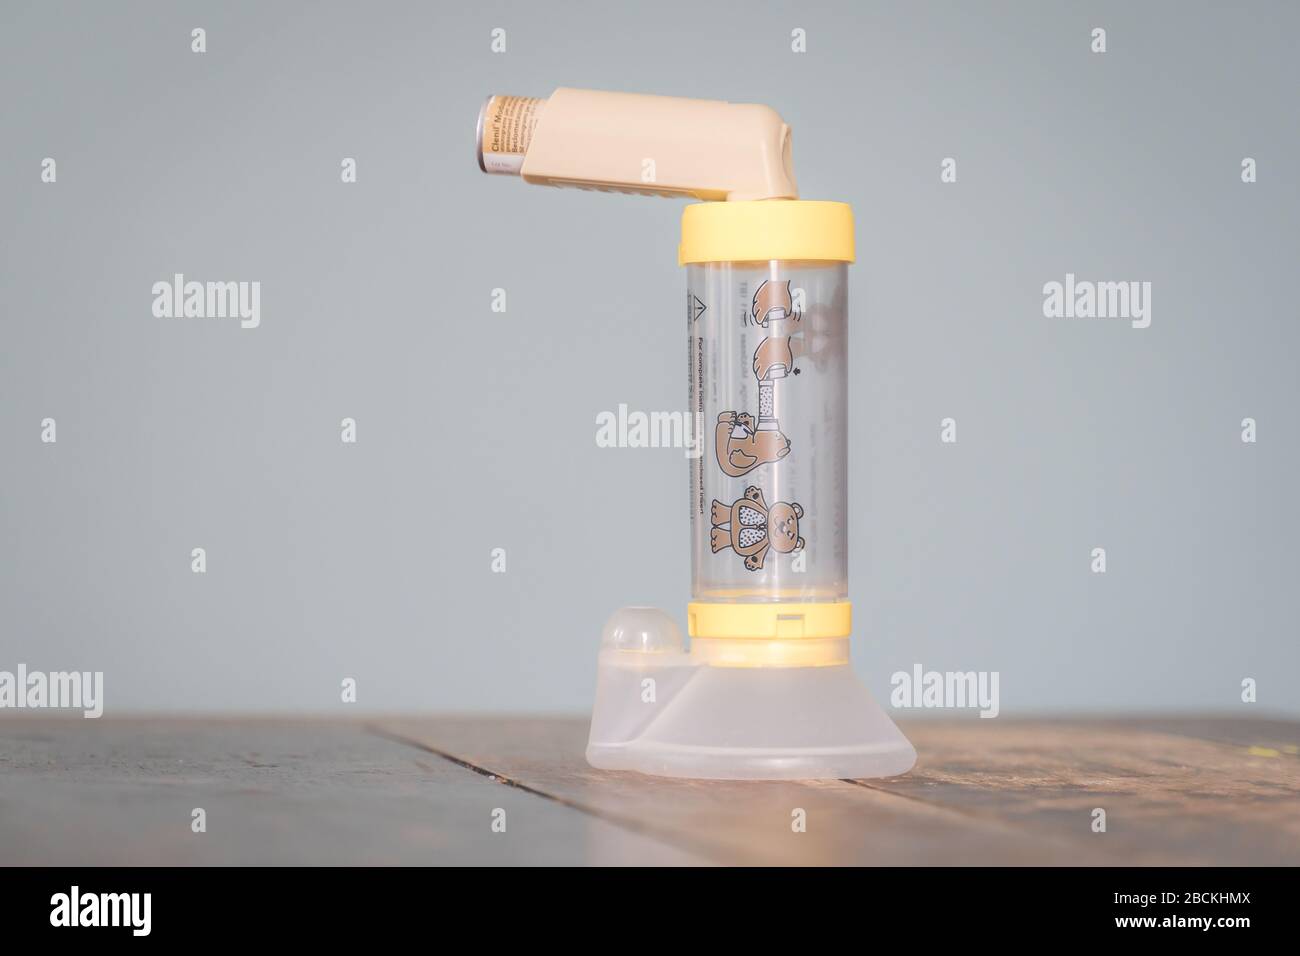 Londres, Royaume-Uni - 3 avril 2020 - inhalateur Clenil (beclomethasone) et espaceur AeroChamber enfant ; médicament couramment prescrit pour le traitement de l'asthme Banque D'Images